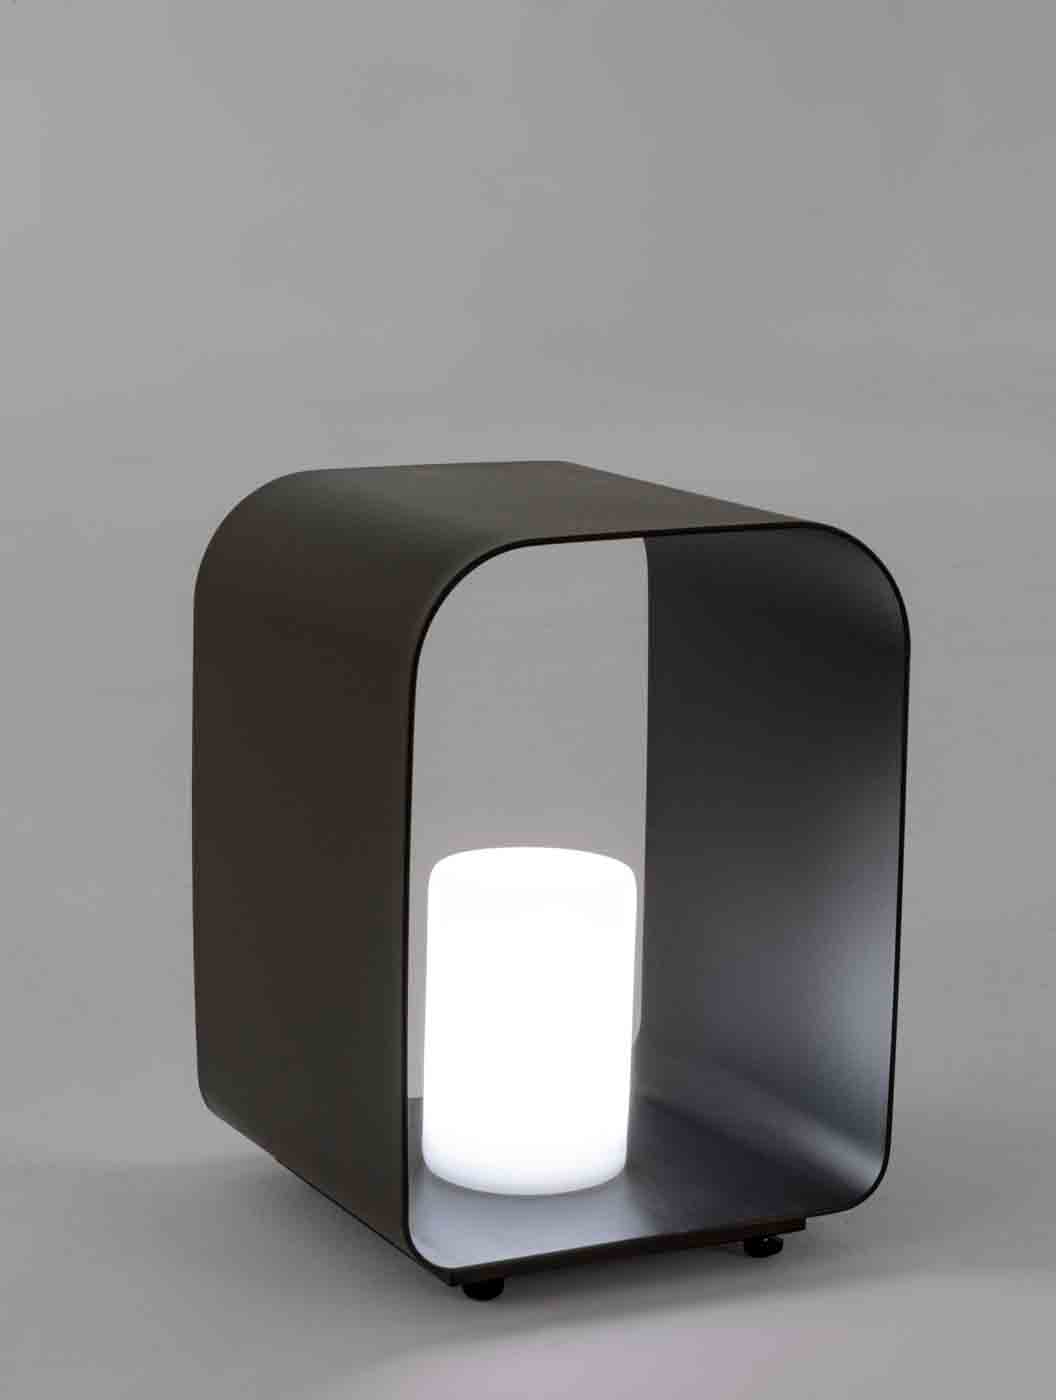 Besondere Outdoor-Lampe Ridley gefertigt aus Aluminium, leuchtet in verschieden Farben